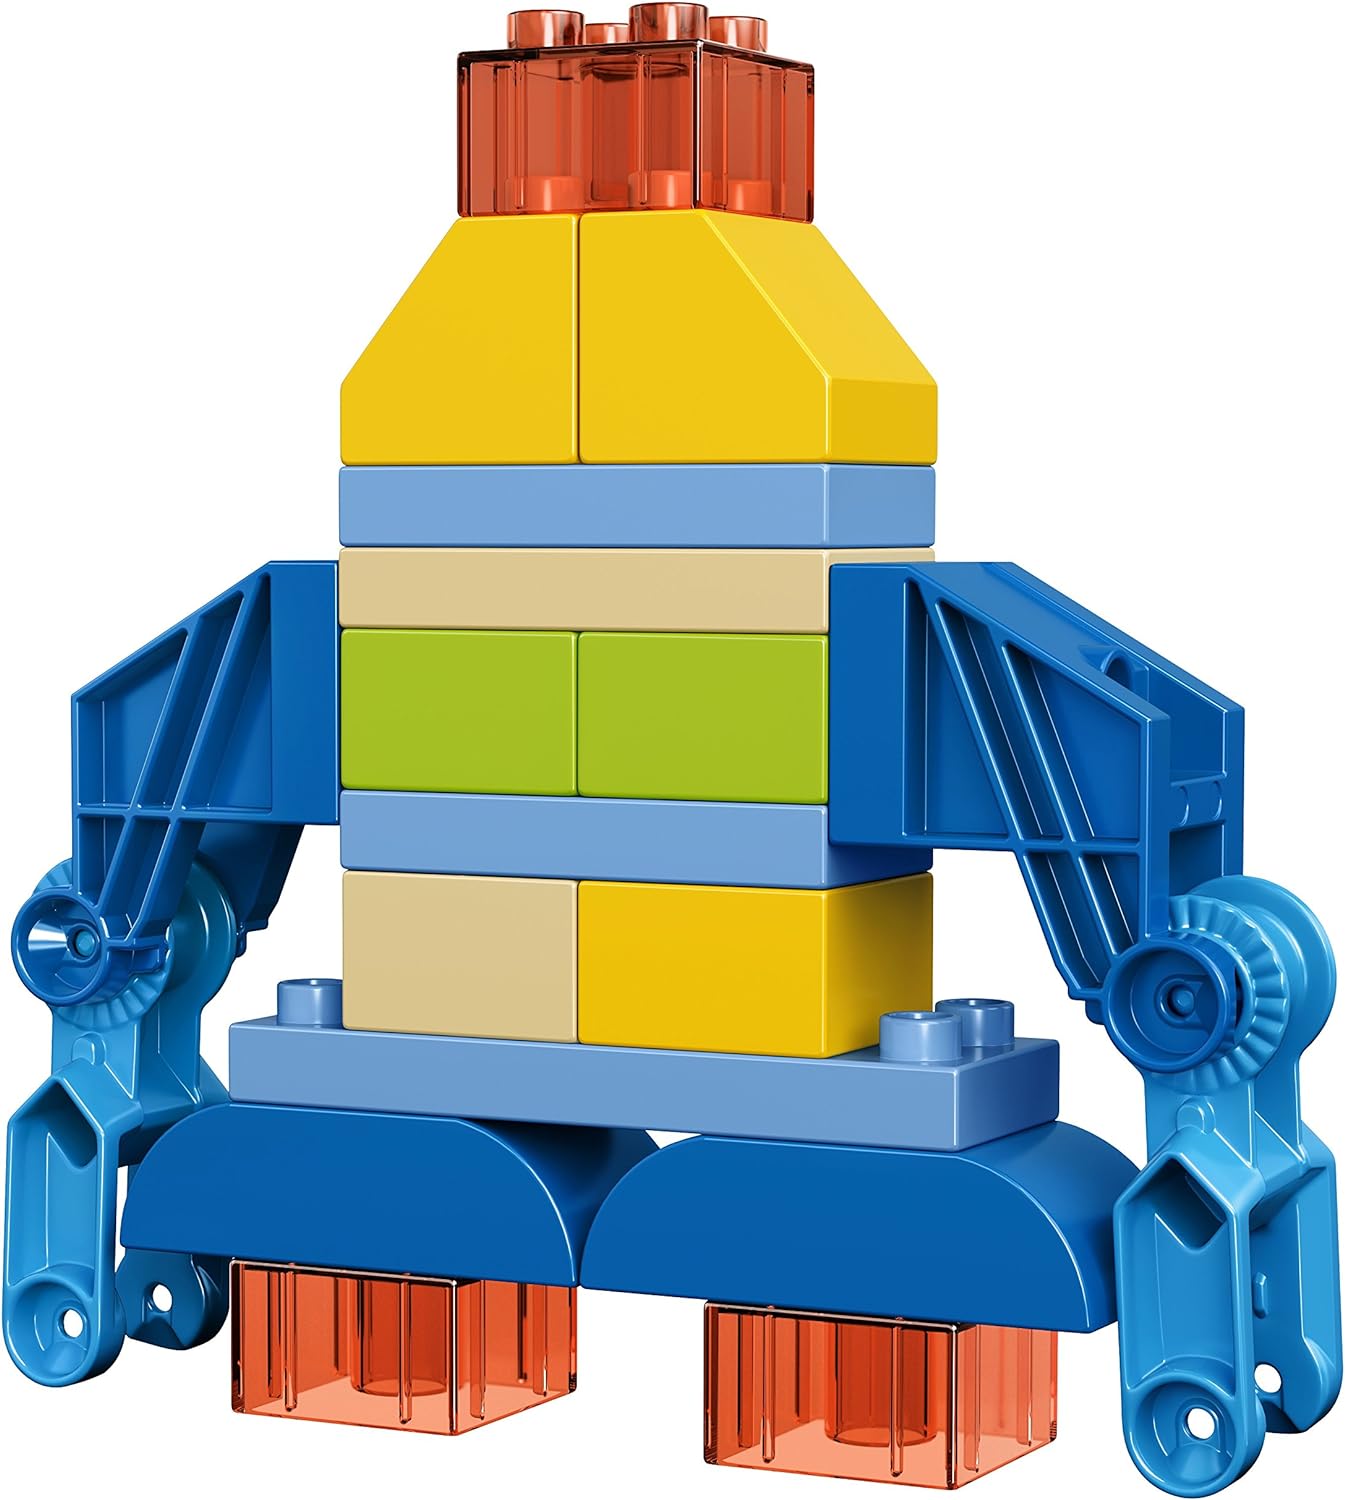 LEGO DUPLO Disney 10825 Miles Exo-Flex Suit Building Kit (37 Piece)